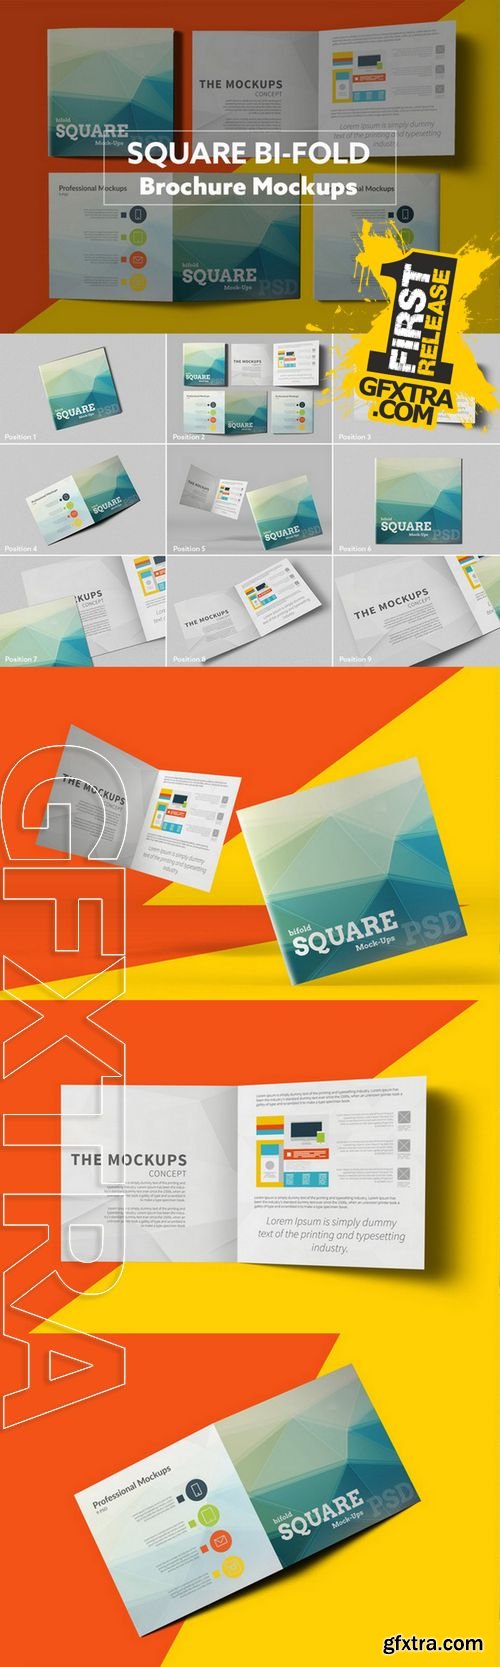 Square Bi-Fold Brochure Mockups - CM 219080